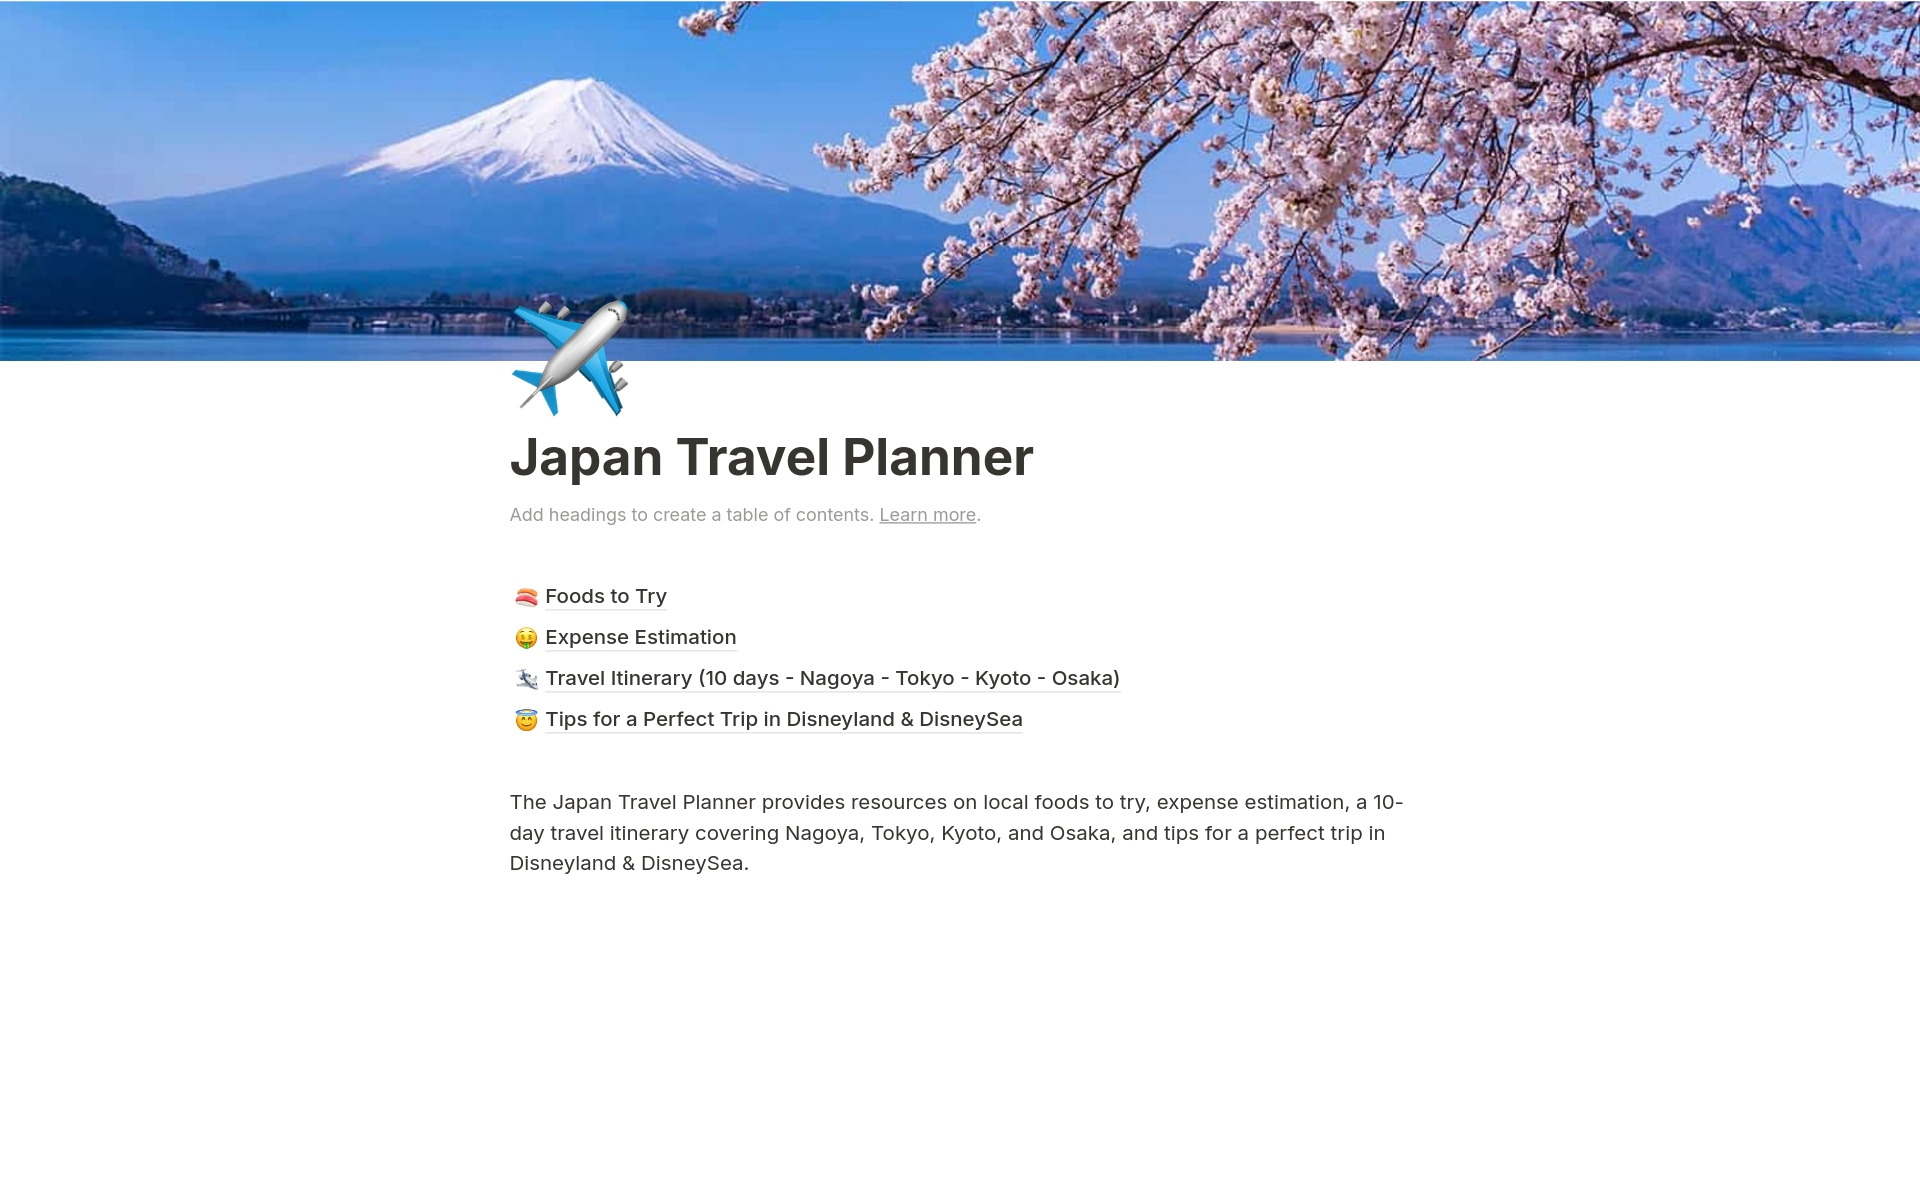 Aperçu du modèle de Japan Travel Planner